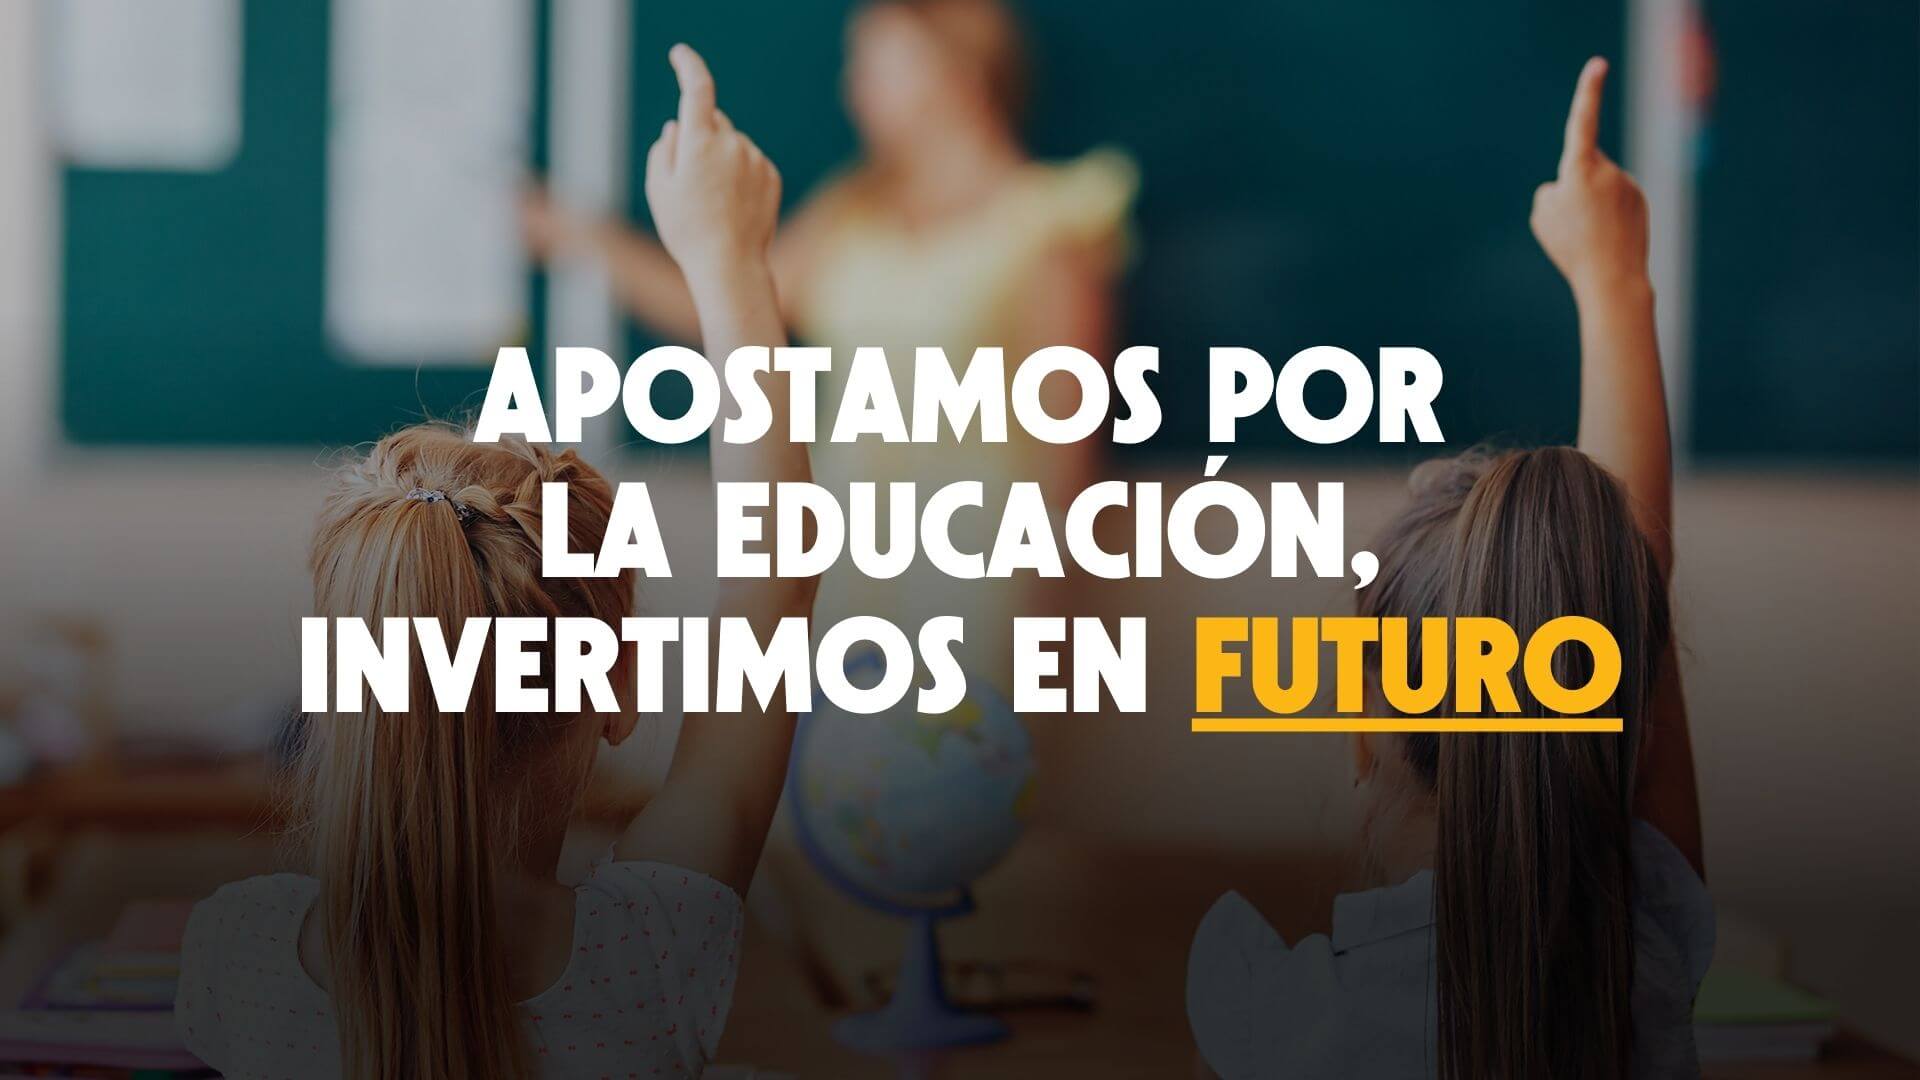 Apostamos por la educación, invertimos en futuro